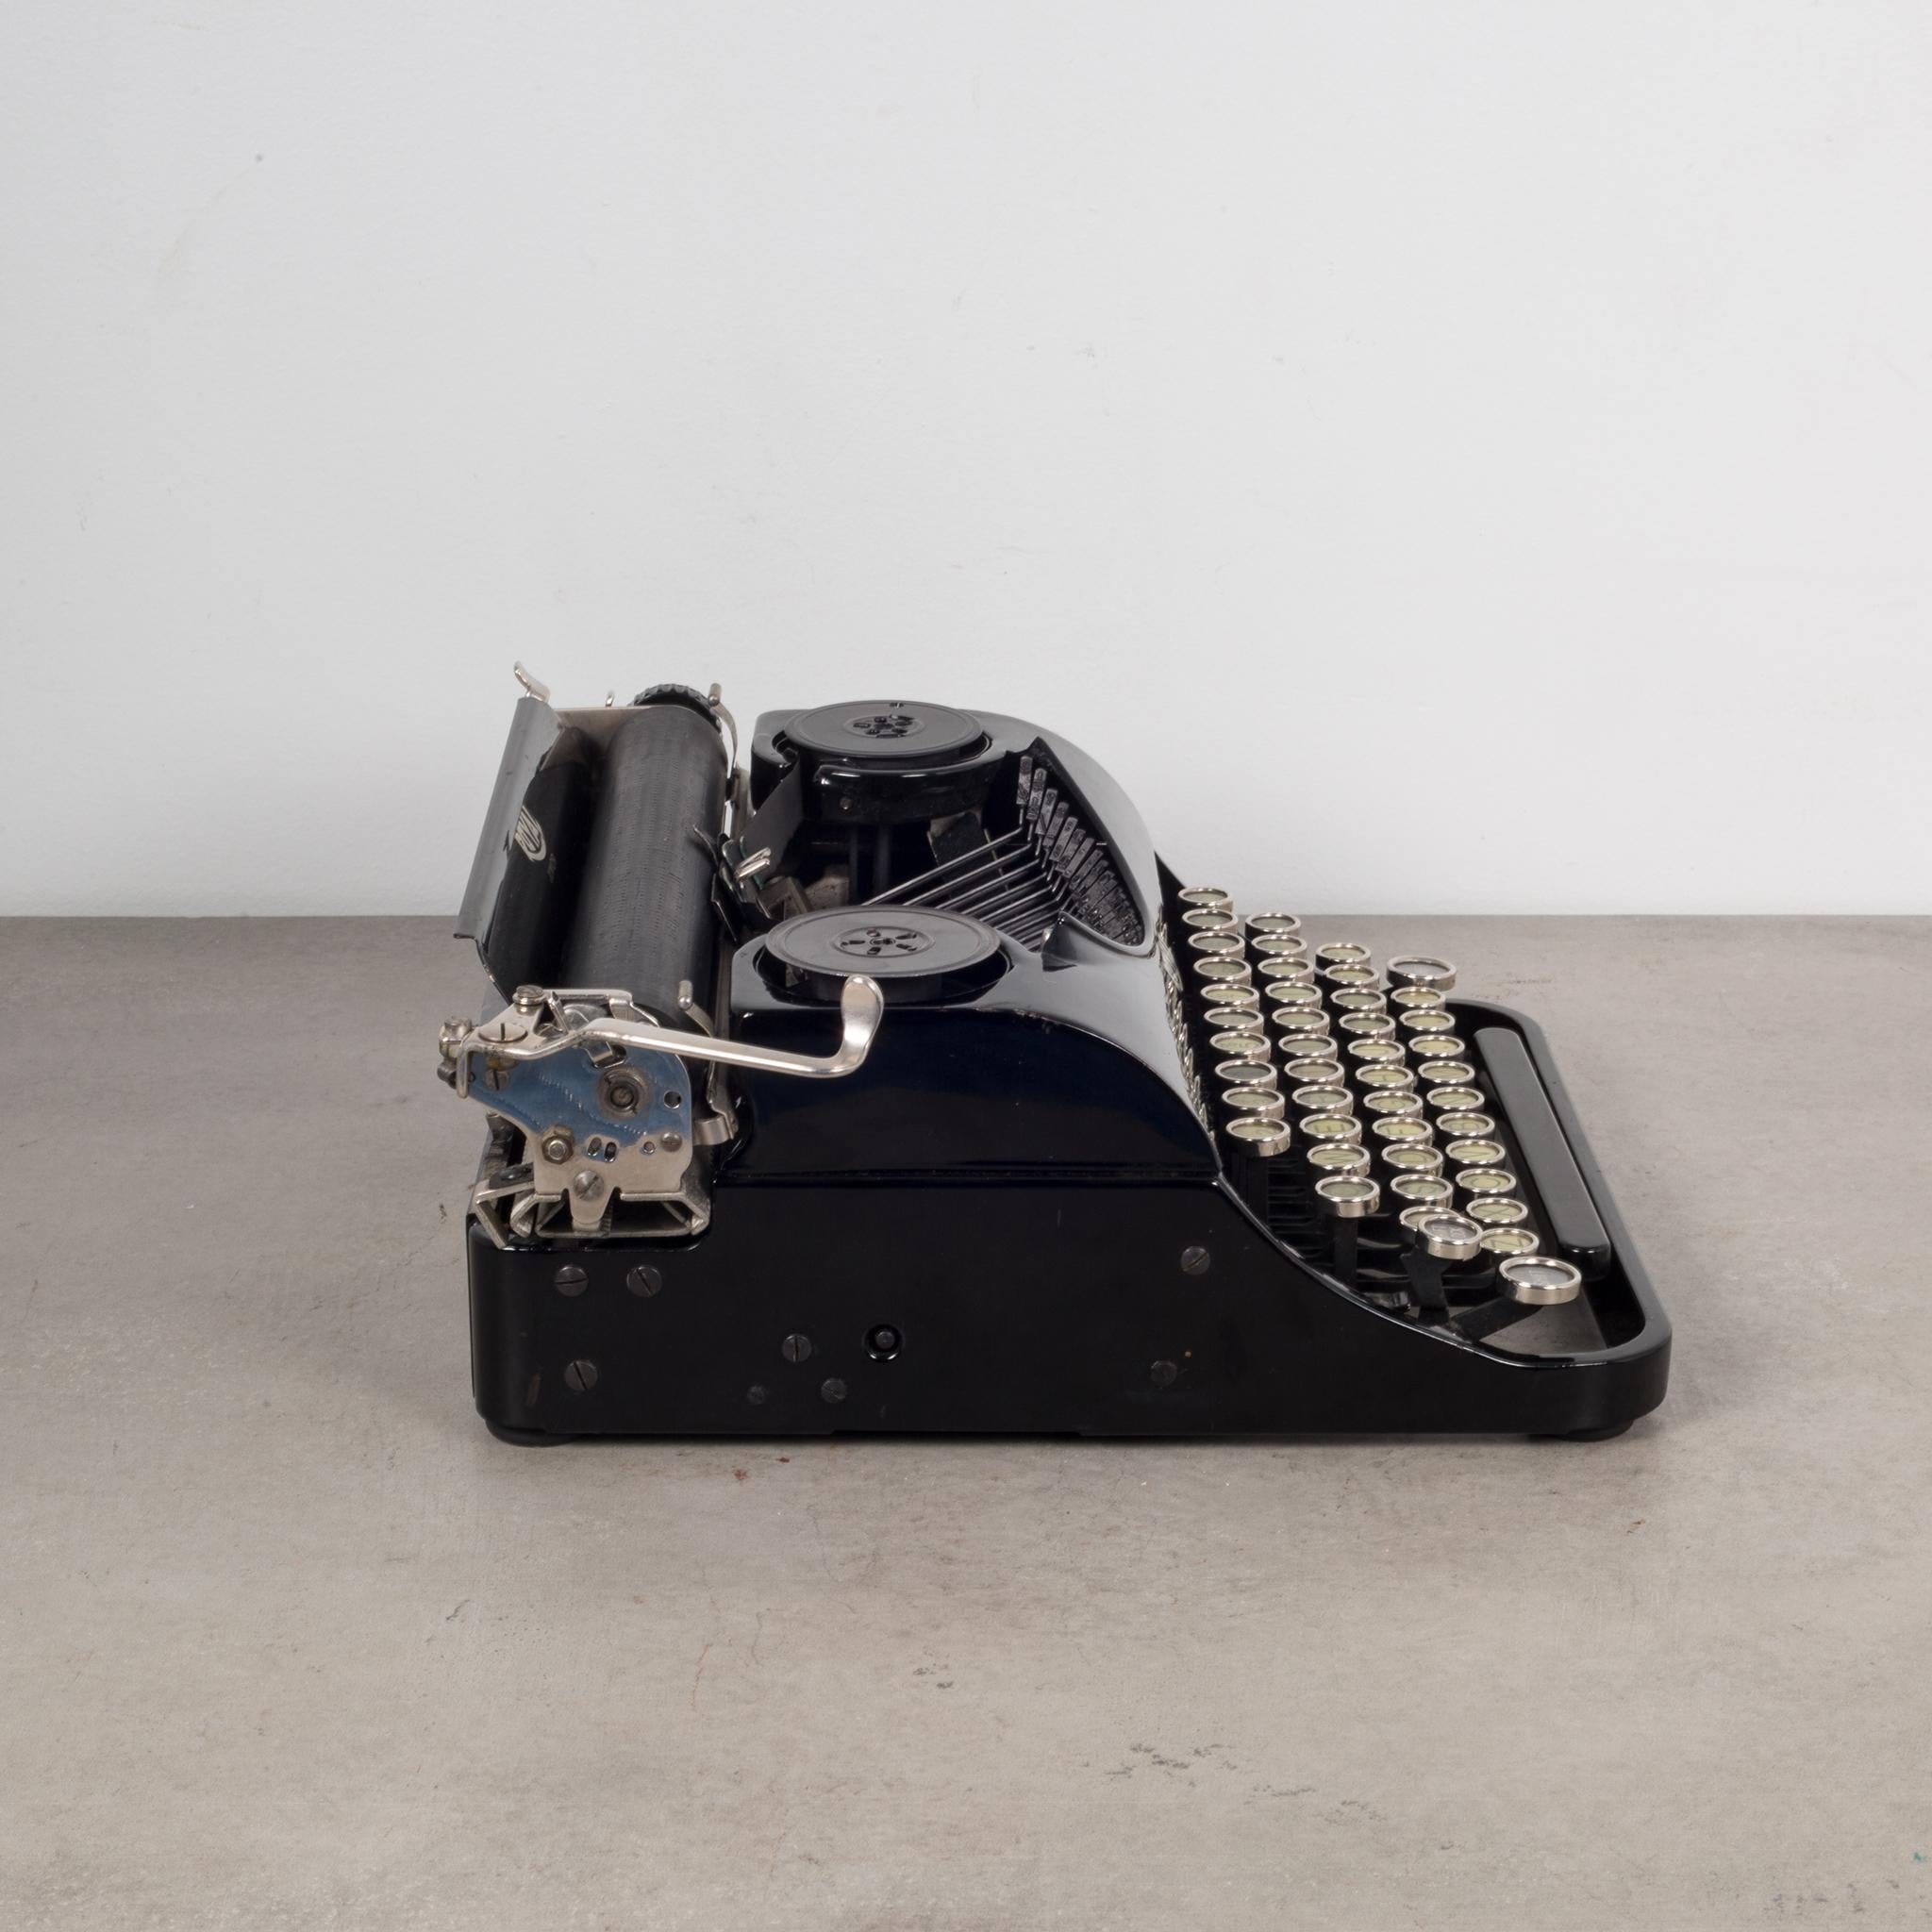 Metal Antique Depression Era Royal Junior Typewriter, circa 1935